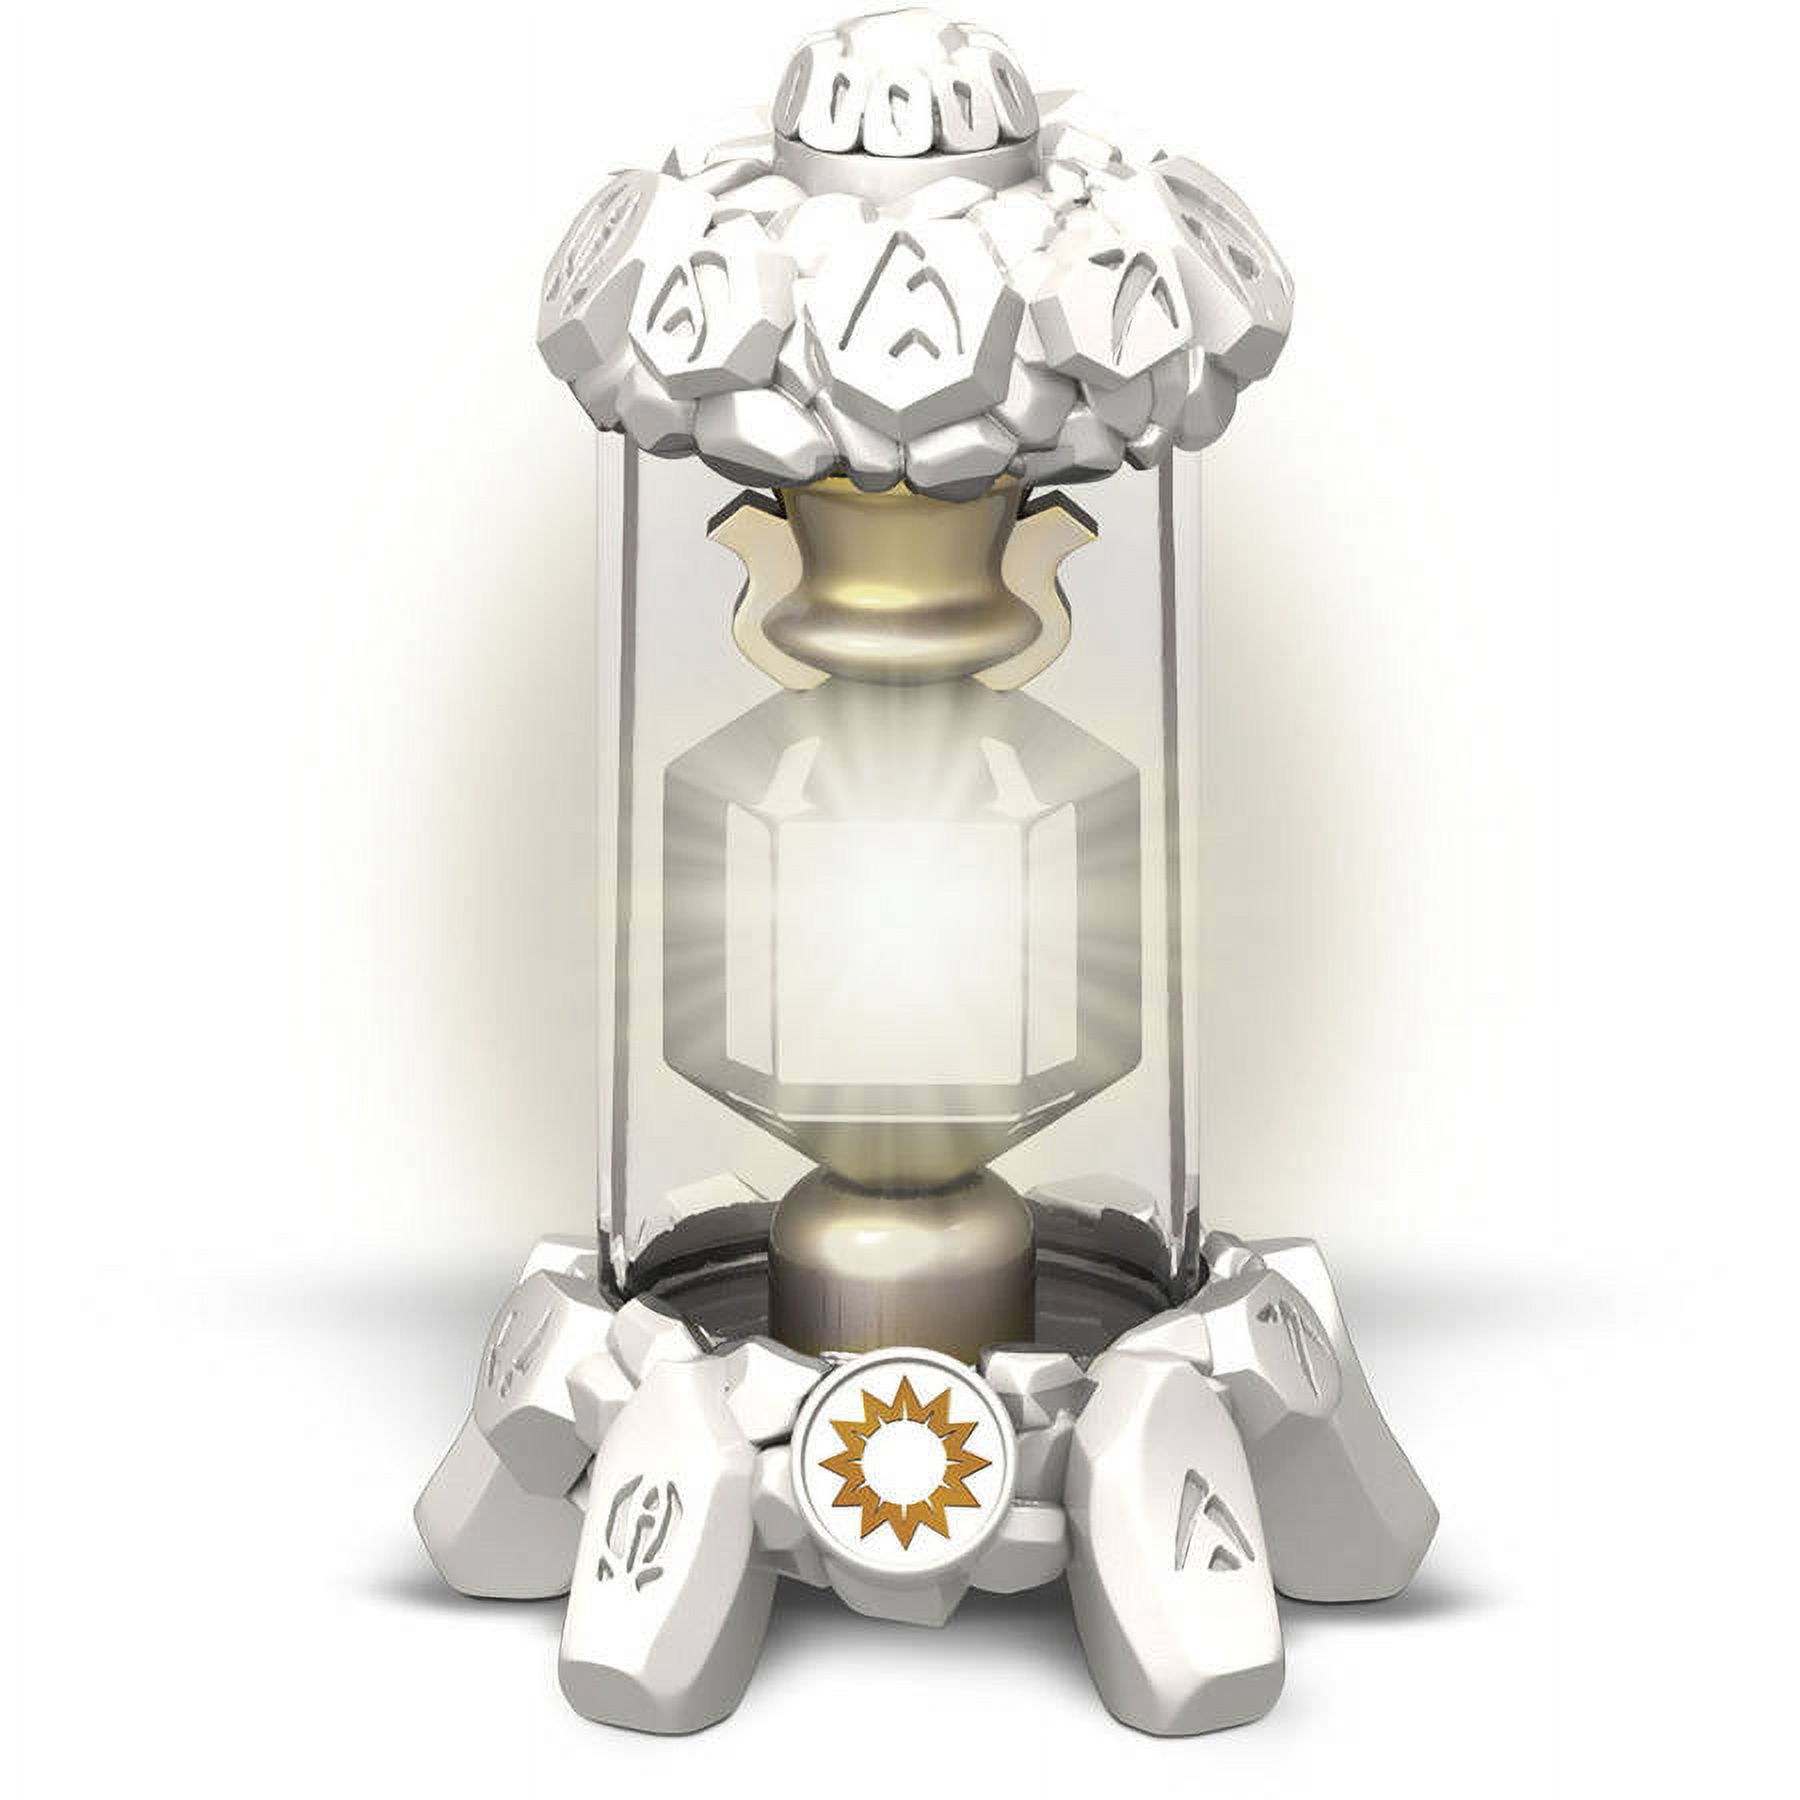 Skylanders Imaginators Light Creation Crystal - image 2 of 4